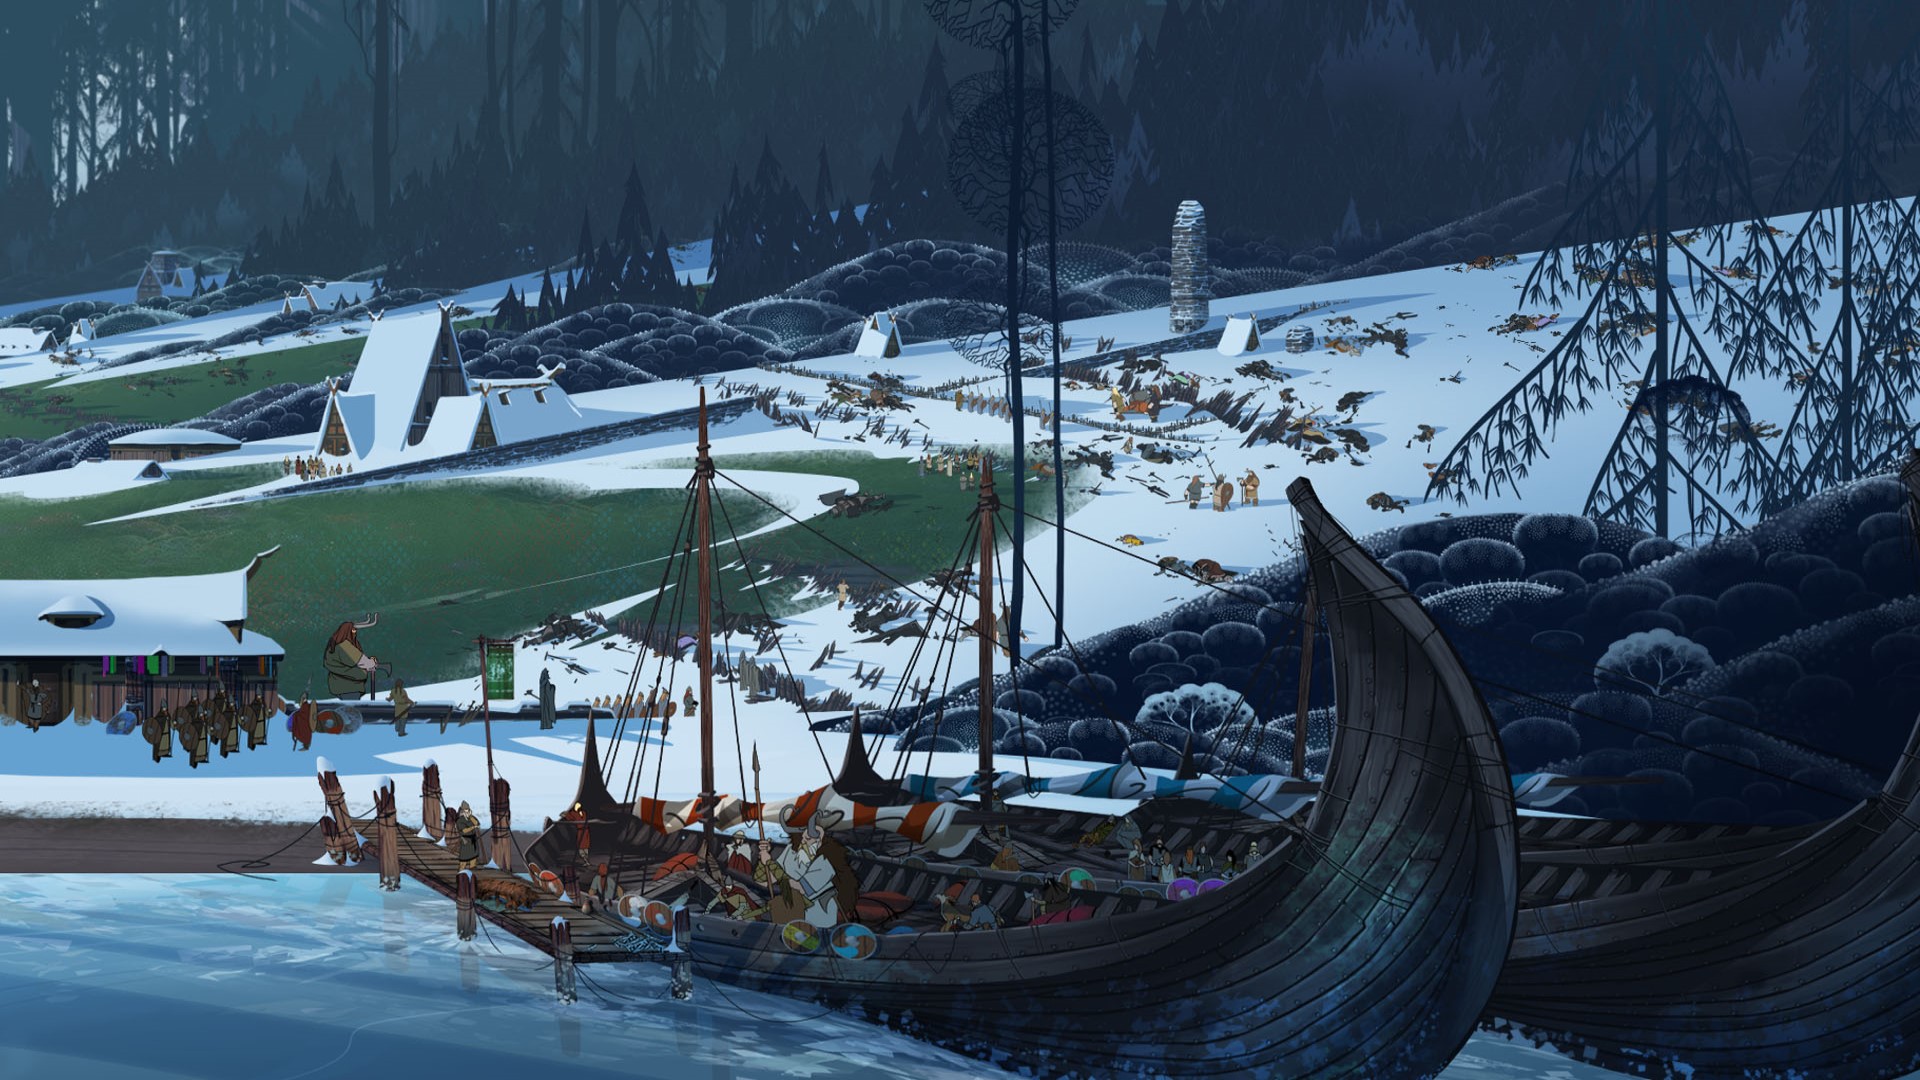 Trò chơi chiến lược di động tốt nhất: Câu chuyện Banner. Hình ảnh cho thấy một con tàu Viking gần một vùng đất tuyết